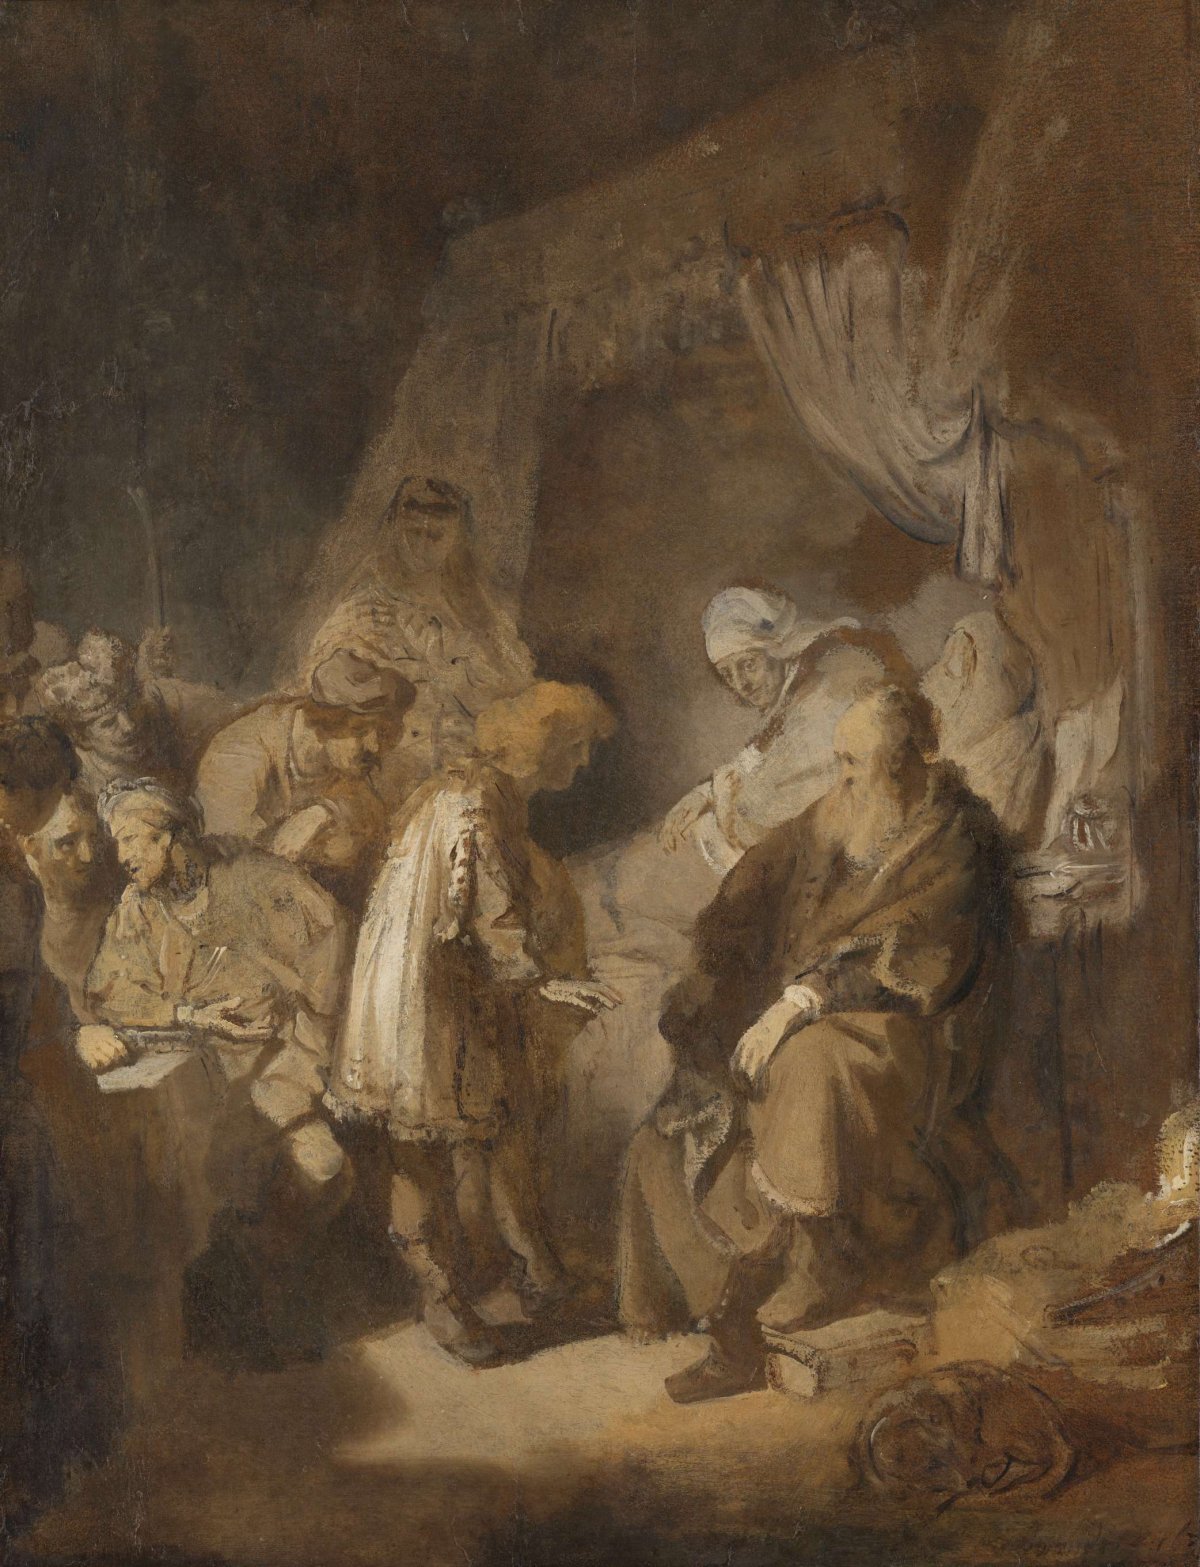 Joseph telling his dreams, Rembrandt van Rijn, 1633